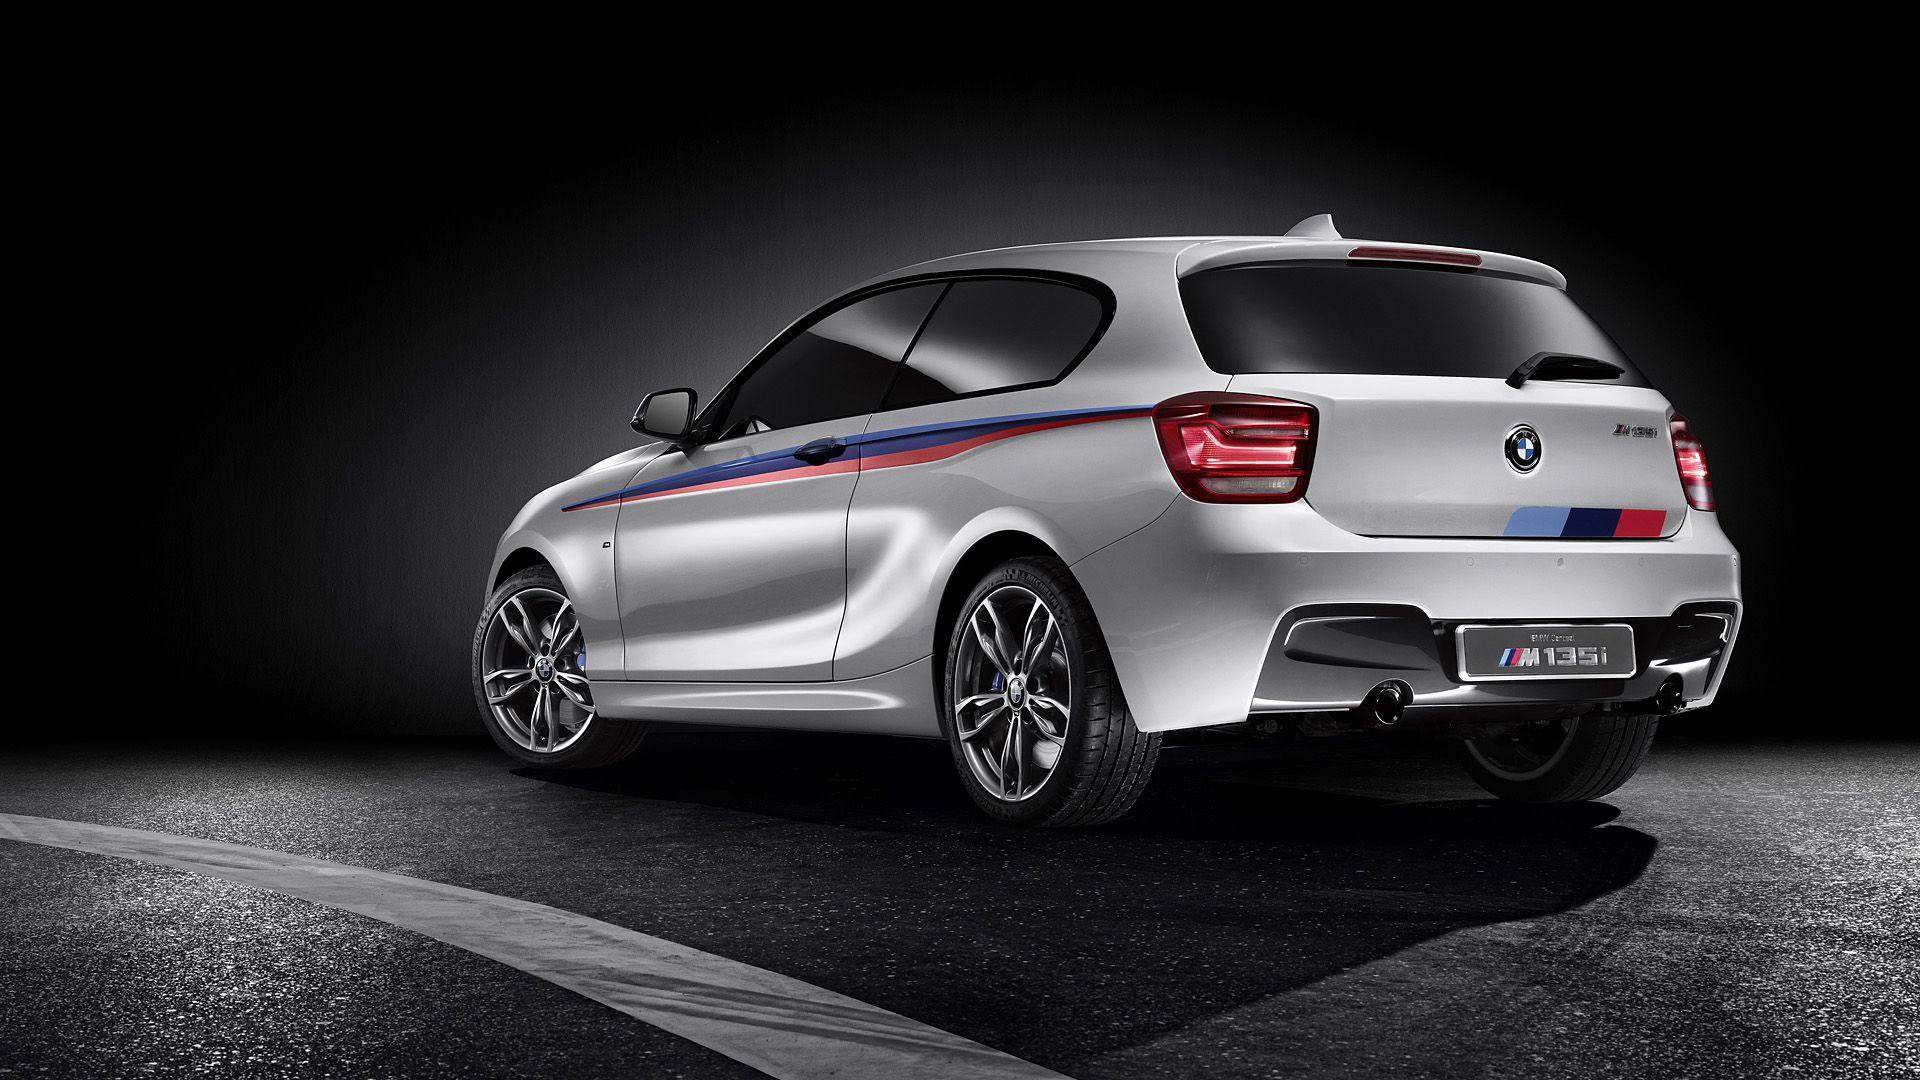 BMW M135i Concept Wallpaper & HD Image